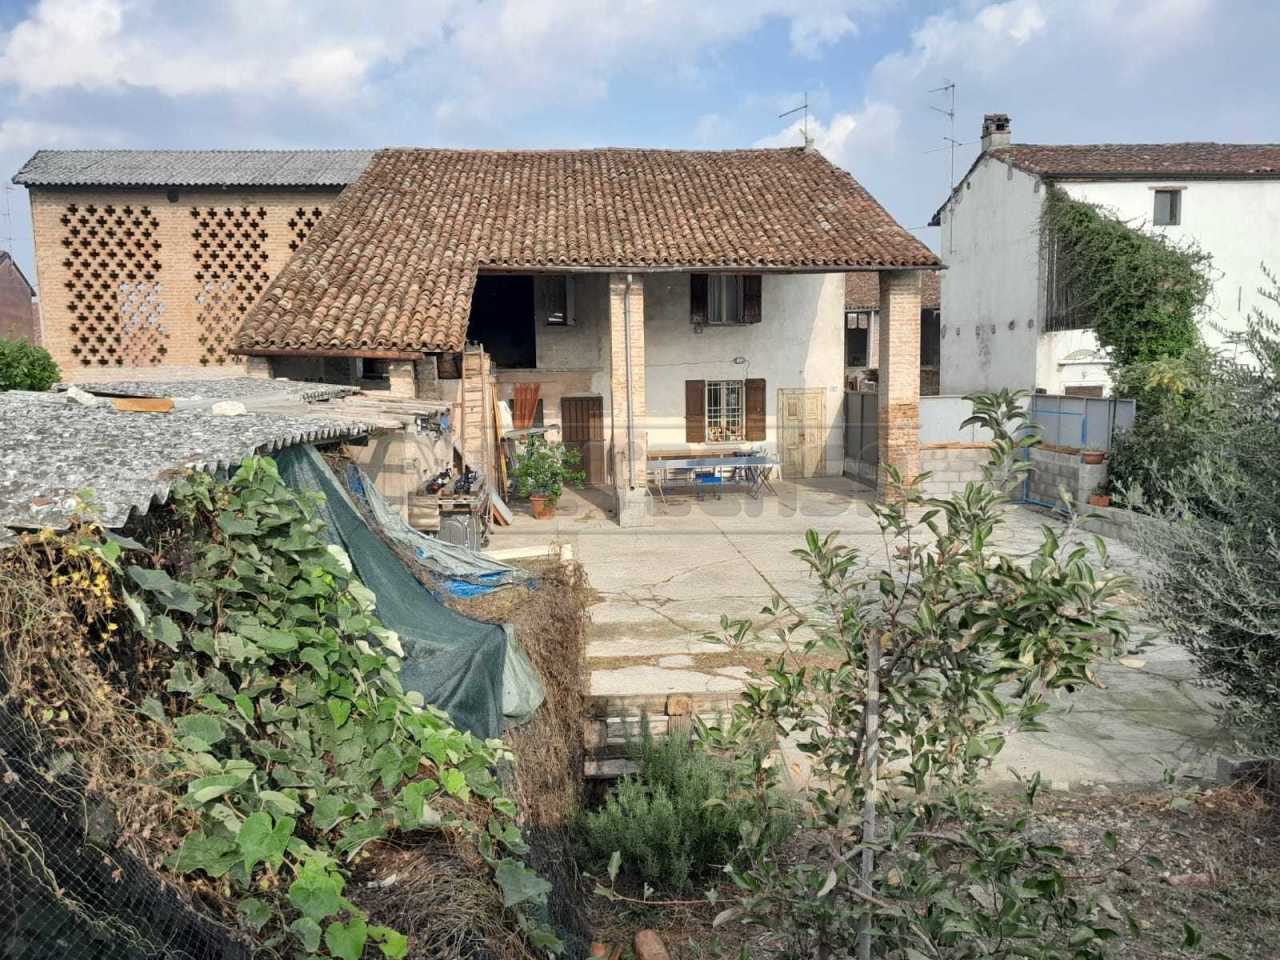 Rustico / Casale in vendita a Cremosano, 3 locali, prezzo € 99.000 | PortaleAgenzieImmobiliari.it